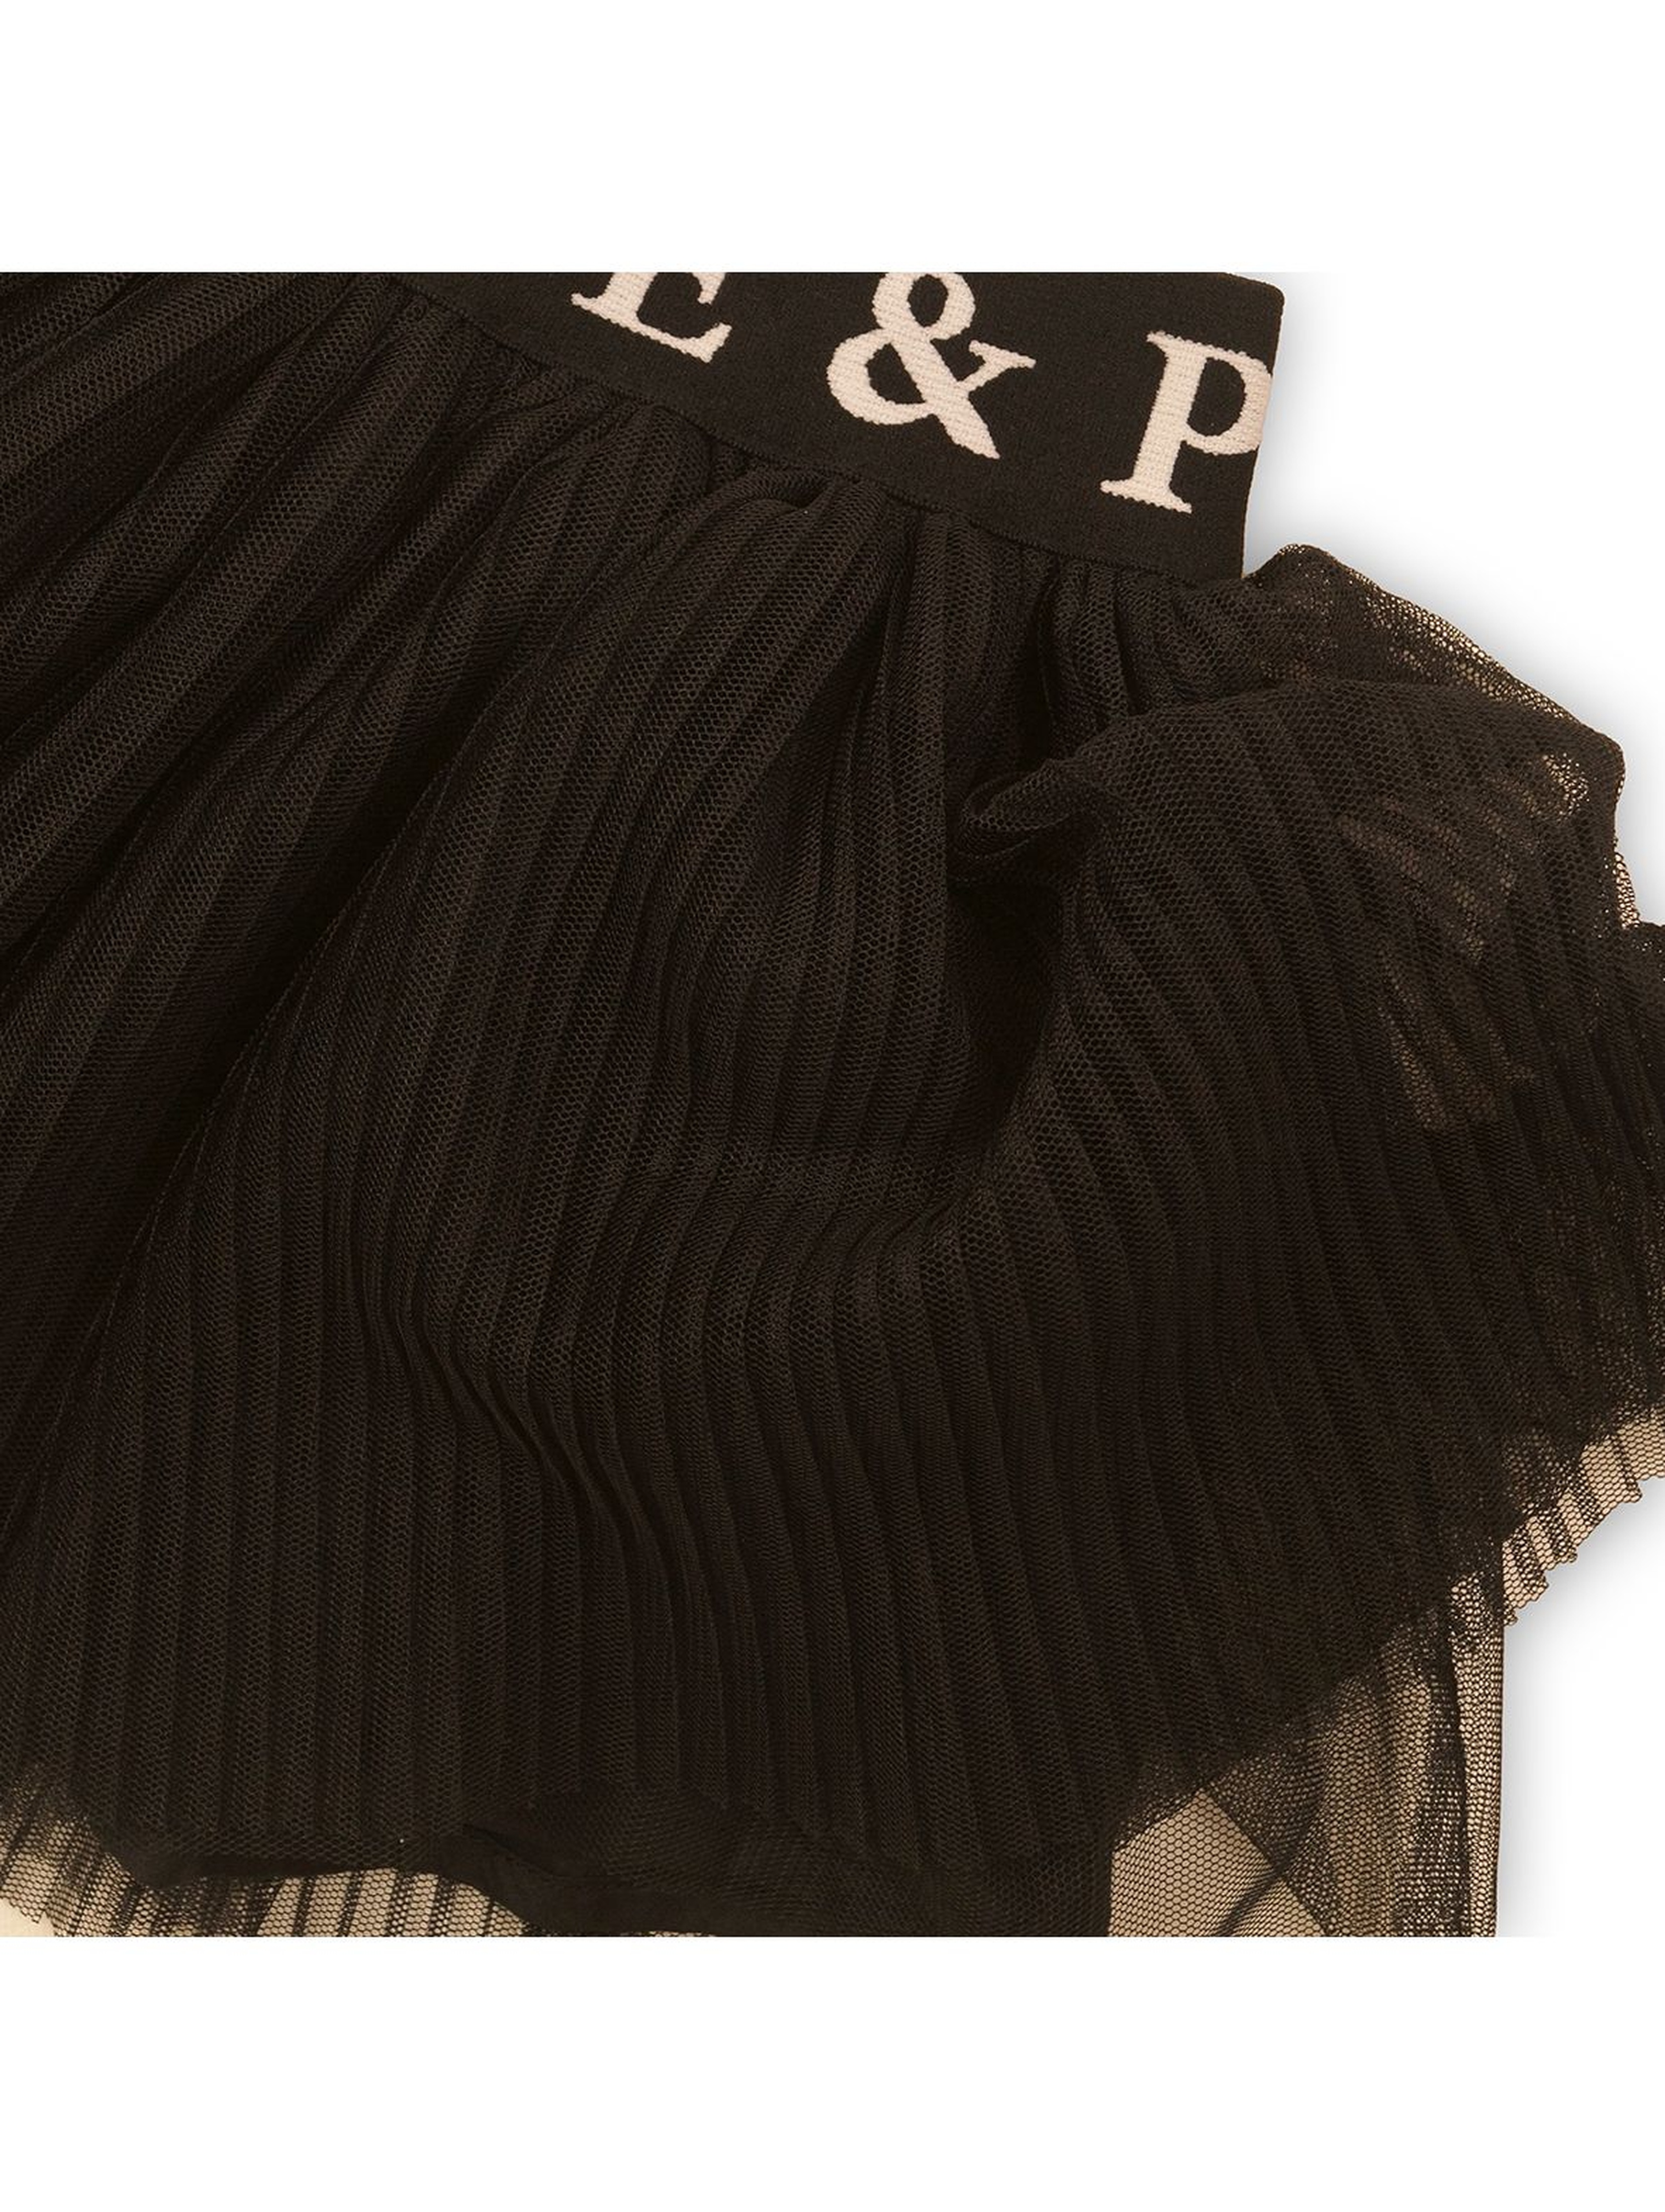 Spódnica tiulowa plisowana - czarna